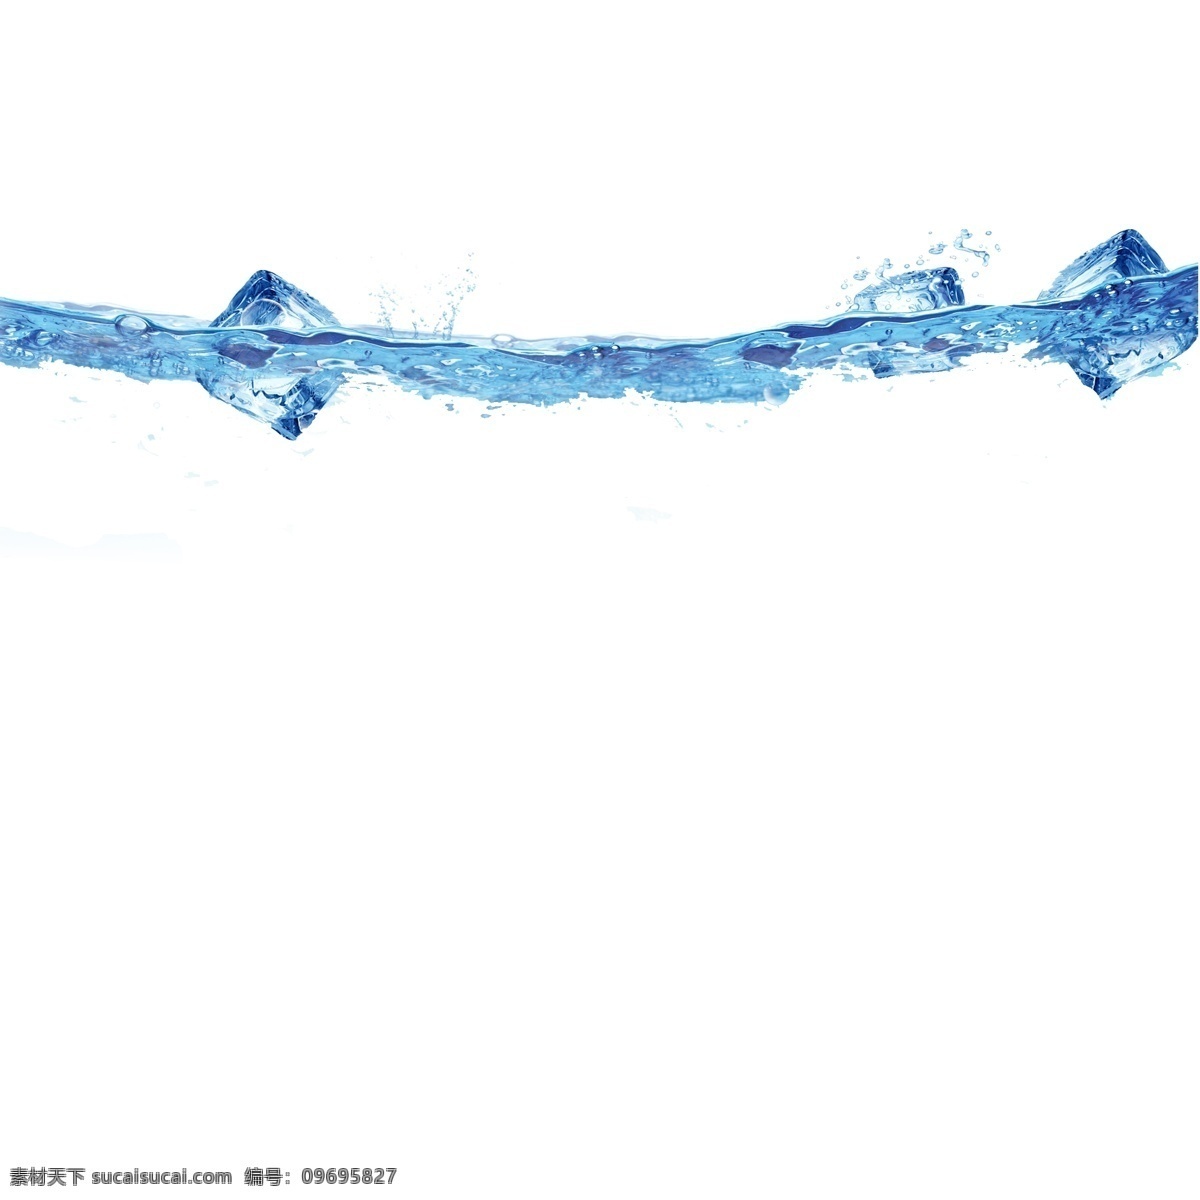 喷溅 水花 水滴 元素 蓝色水花 水波纹 波浪 动感 动感水 动感水浪 动感水纹 水效果 水波 水 飞溅 水圈